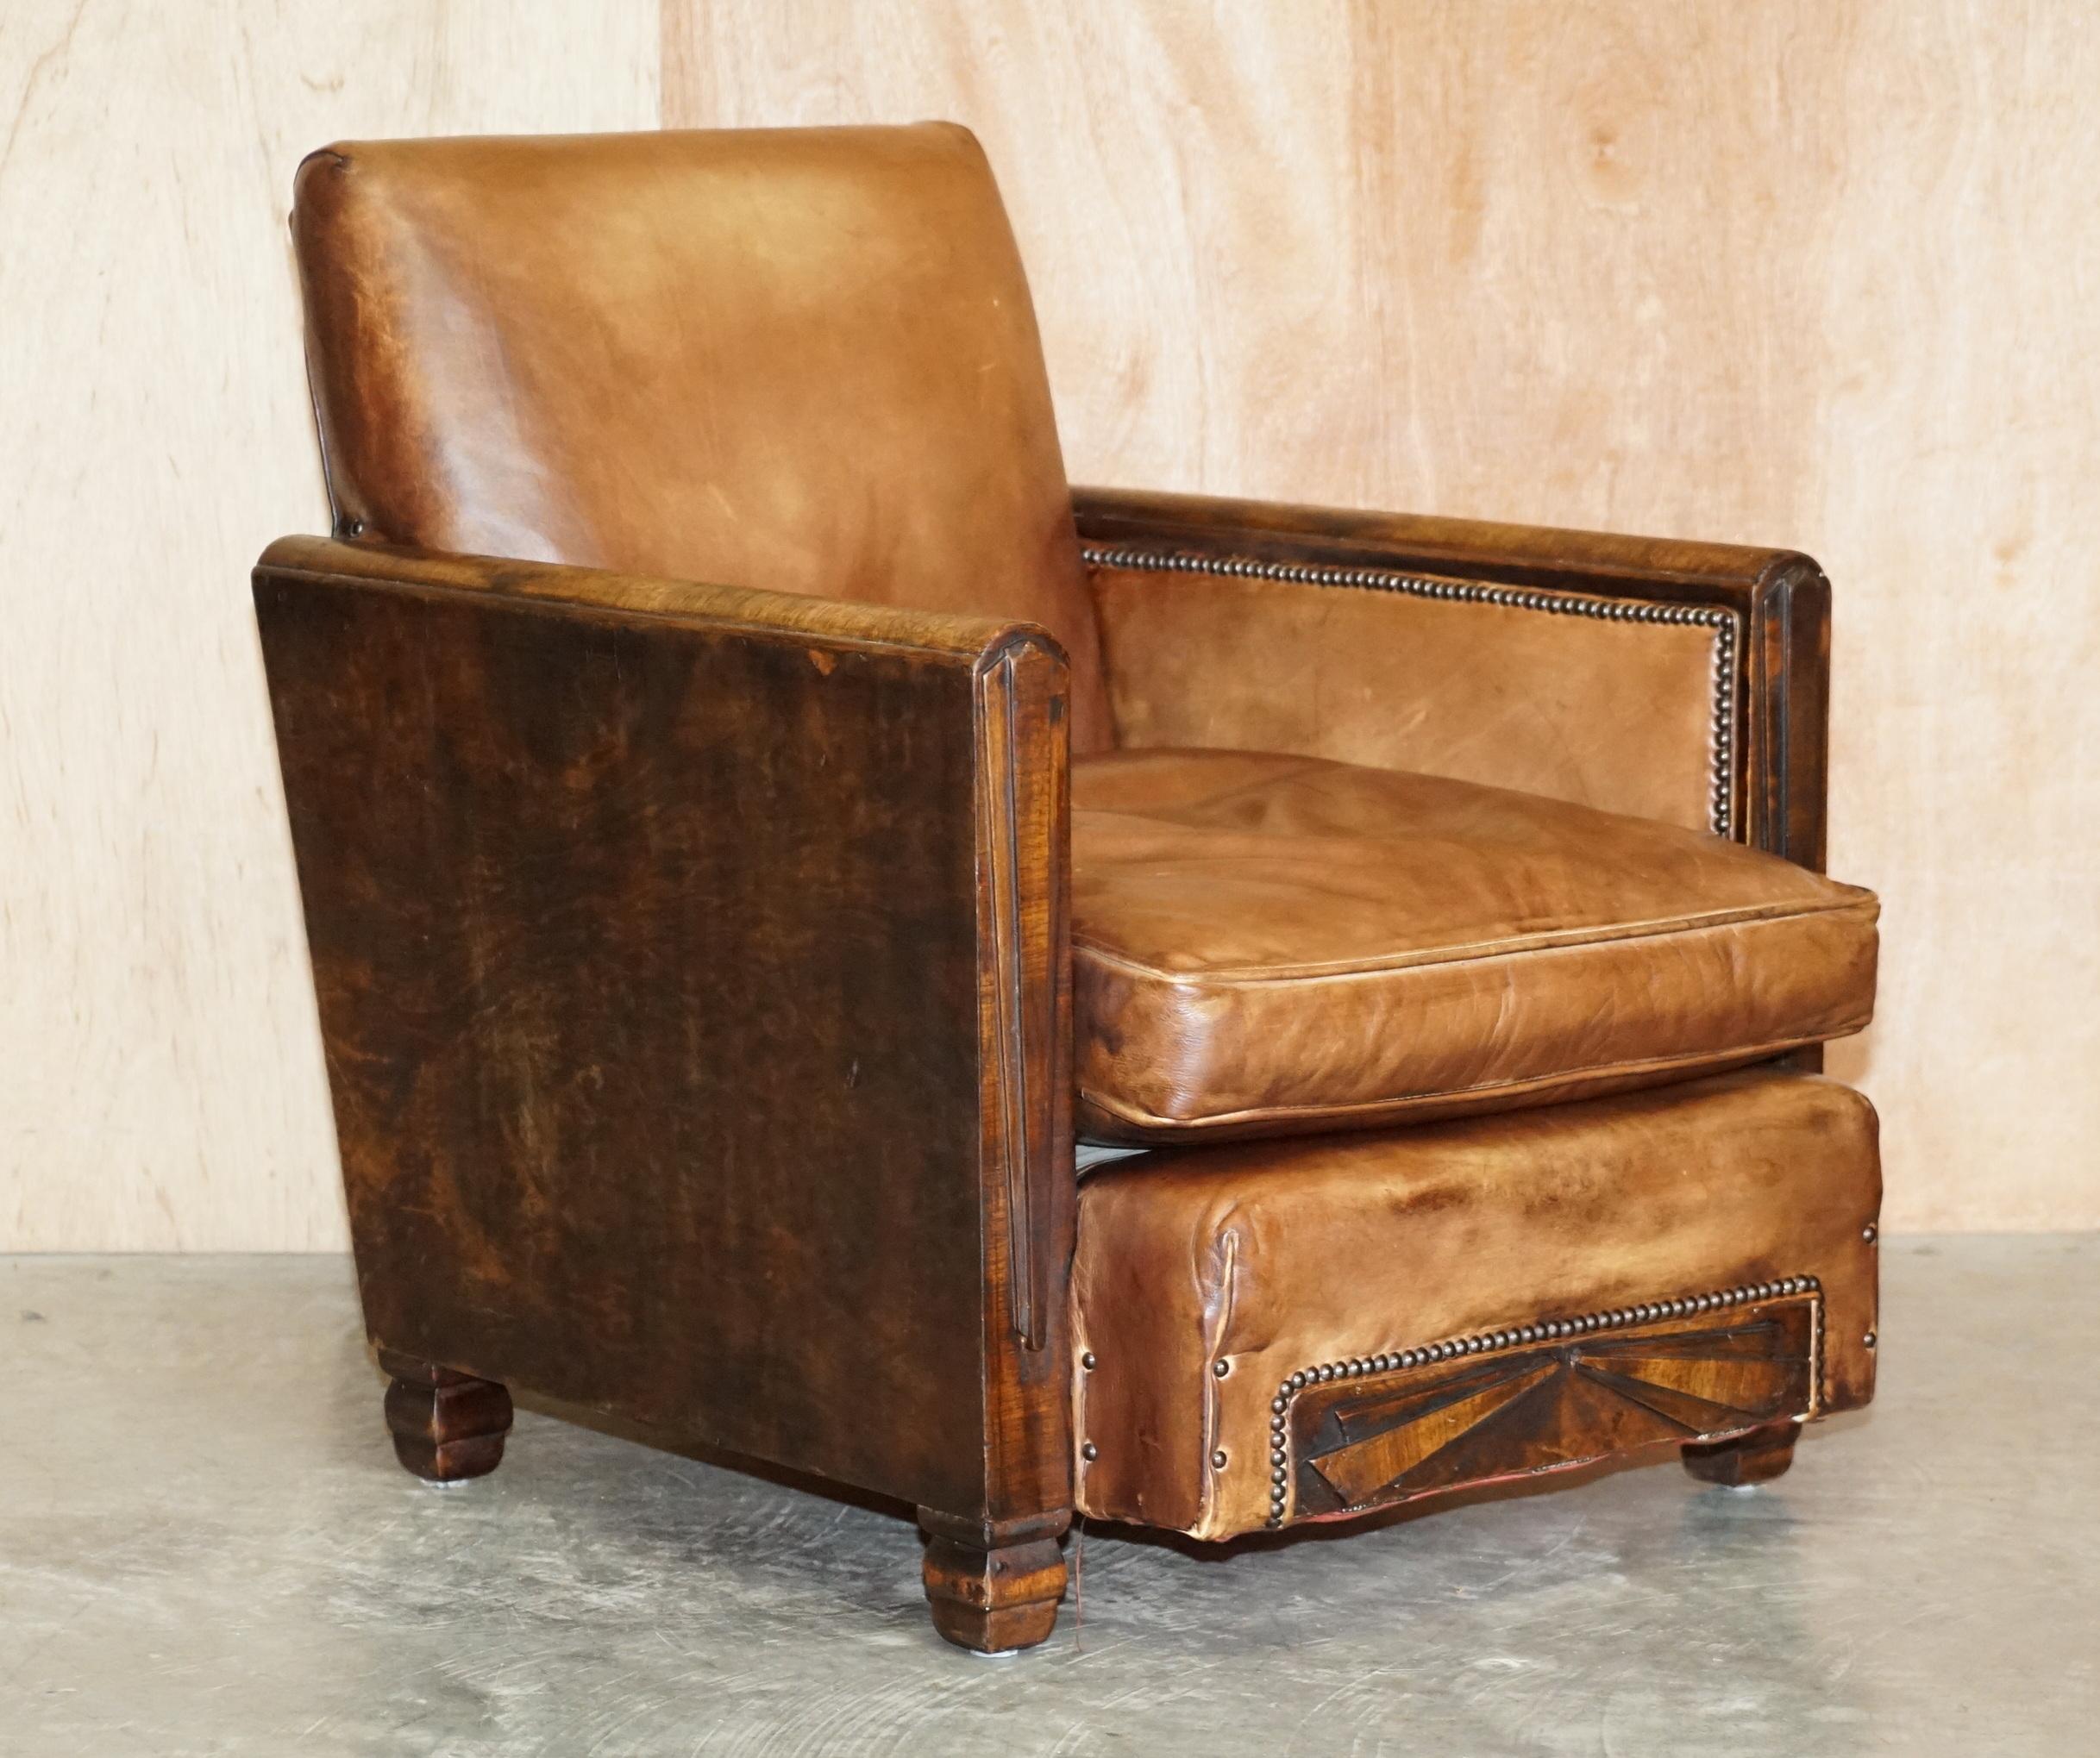 Wir freuen uns, dieses atemberaubende Paar restaurierter Metropolitan Art Deco Clubsessel aus handgefärbtem braunem Leder zum Verkauf anbieten zu können 

Diese sind sehr stilvolle Paar antike Club-Sessel mit Nussbaum Rahmen, die Säulen der Arme